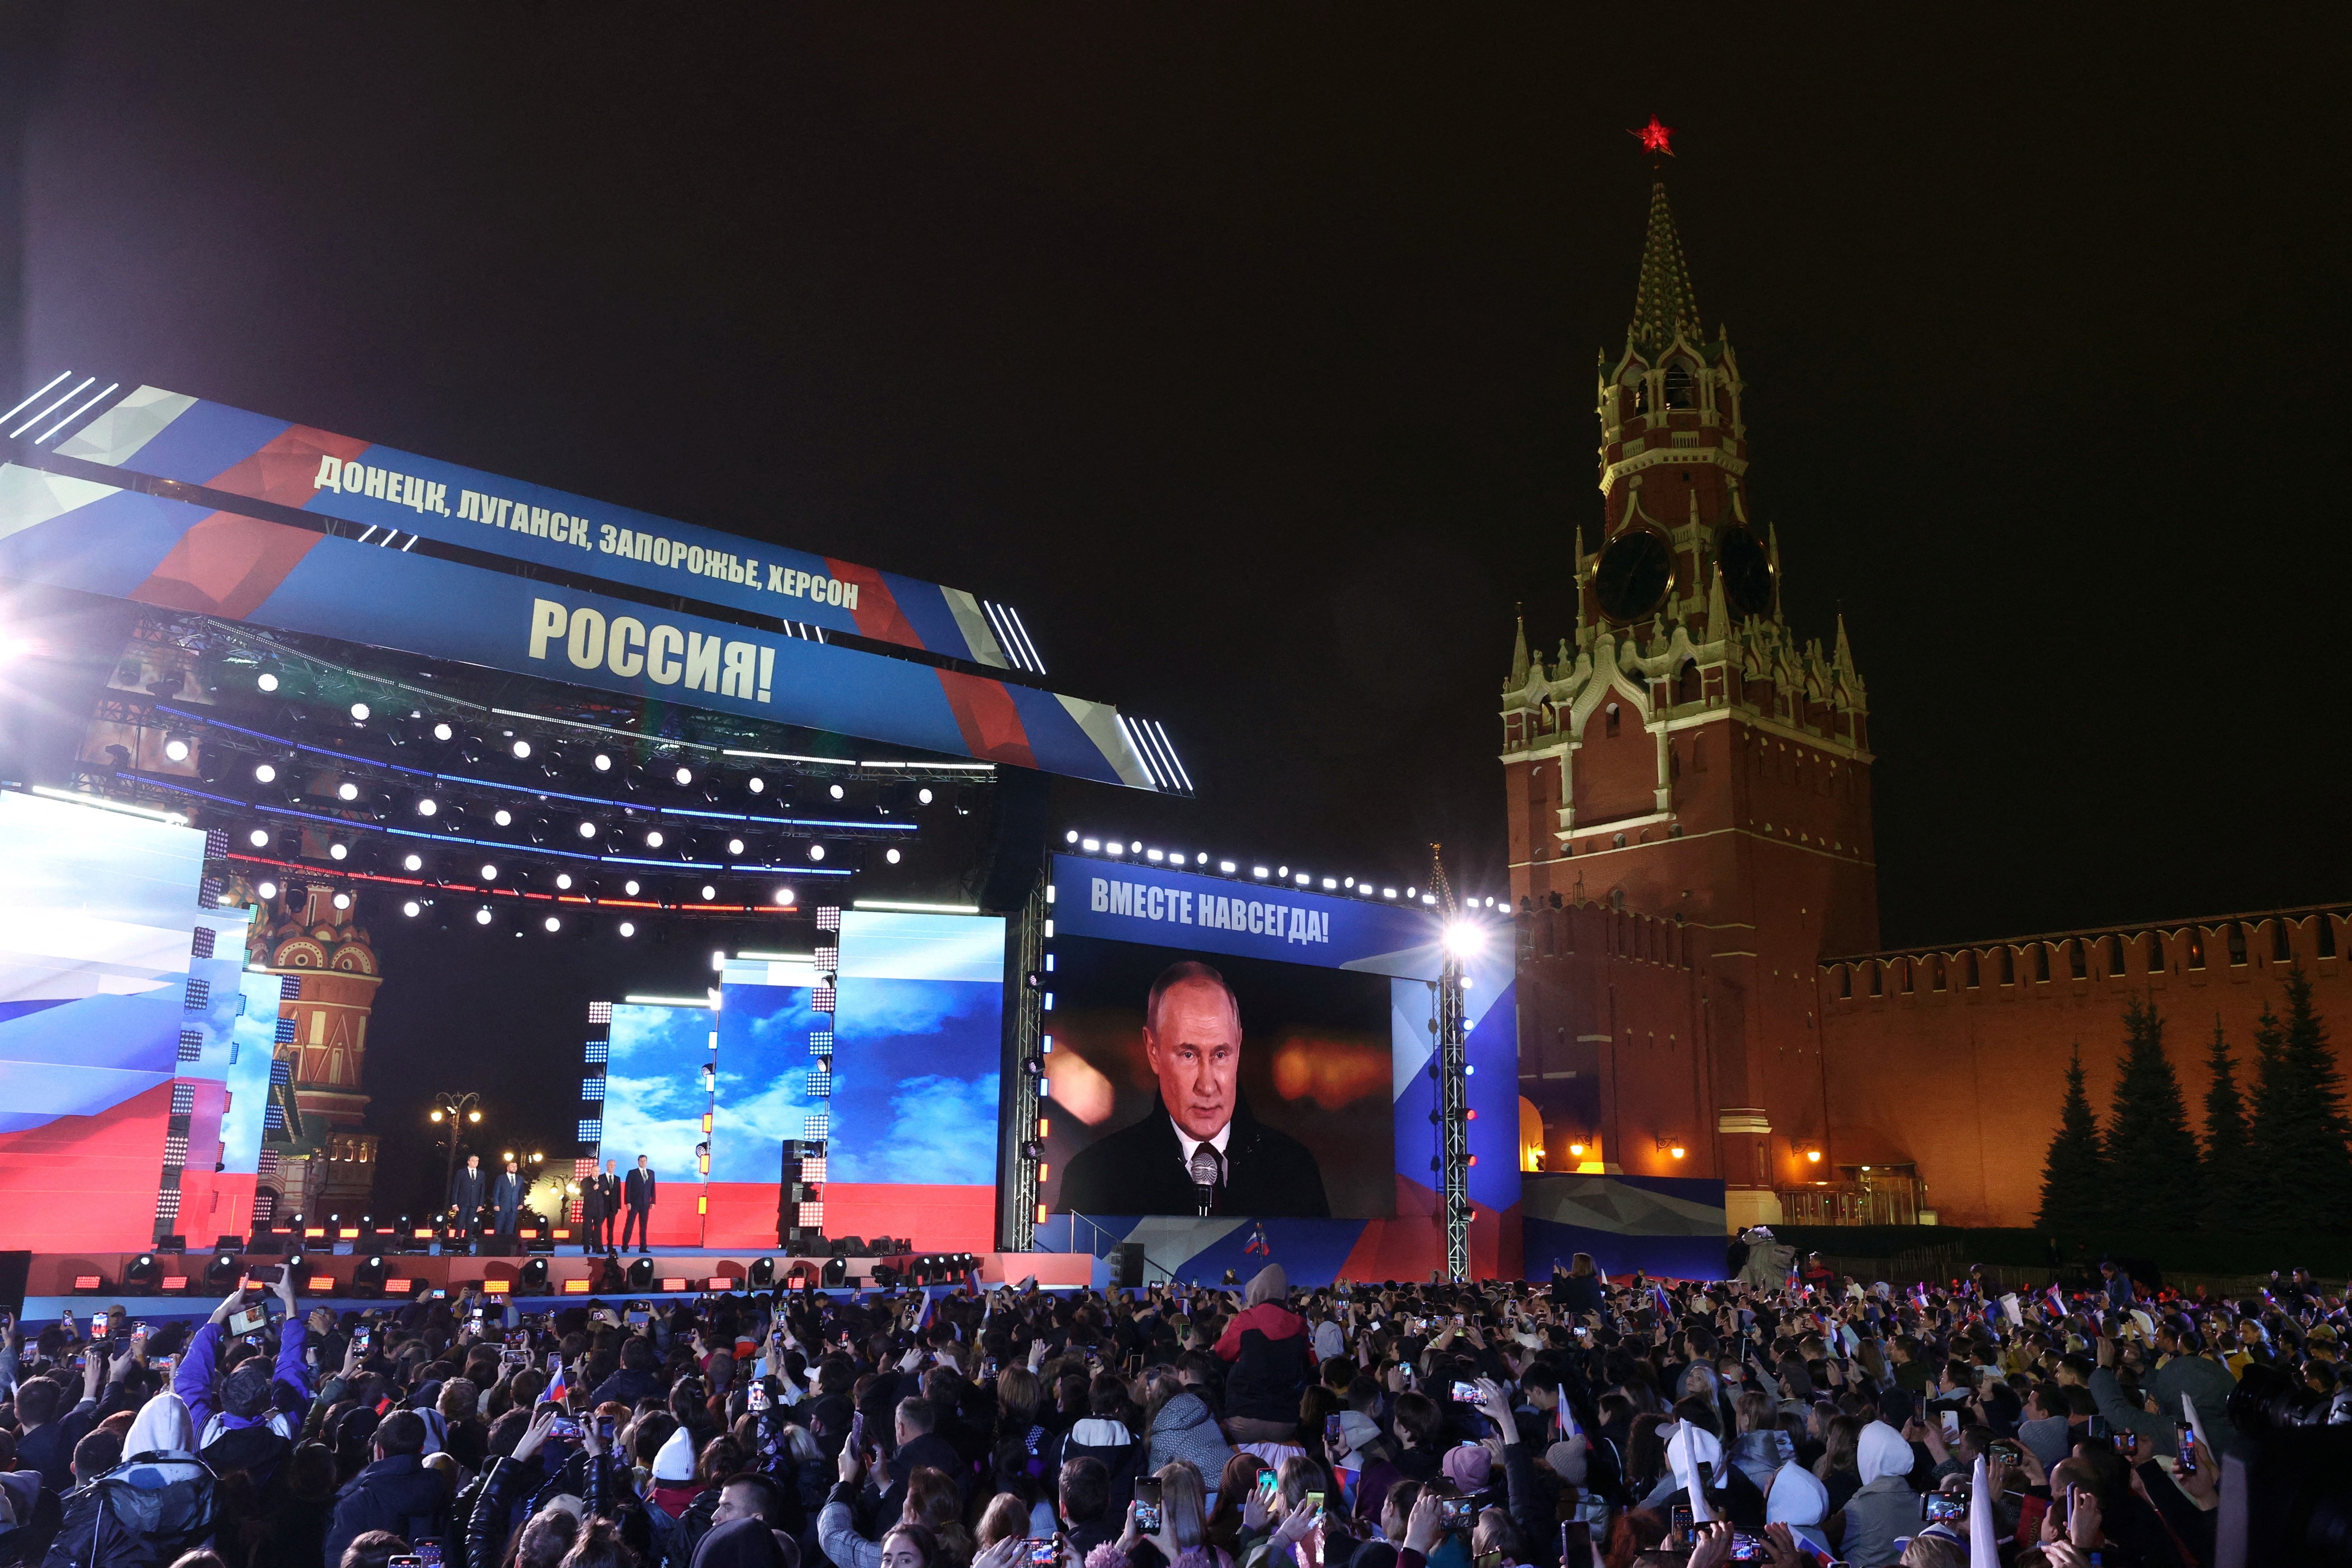 VÍDEO: Moscou tem festa patriótica com show para comemorar anexação ilegal de territórios ucranianos